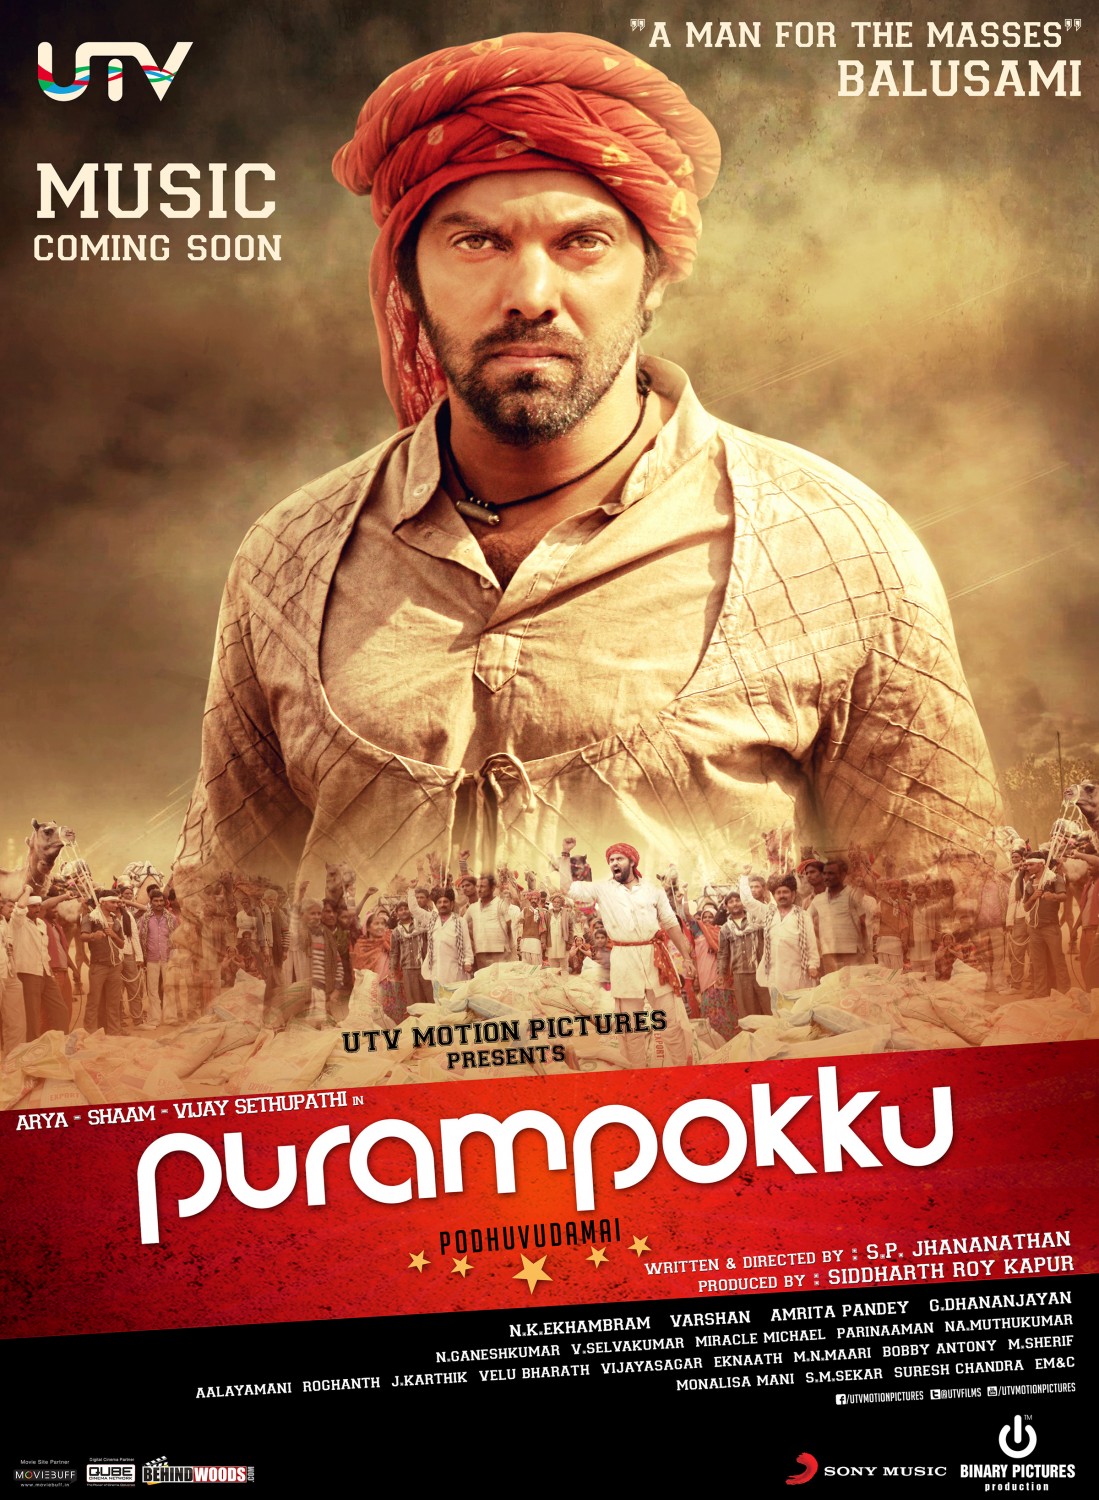 Extra Large Movie Poster Image for Purampokku Poduvudamai (#3 of 5)